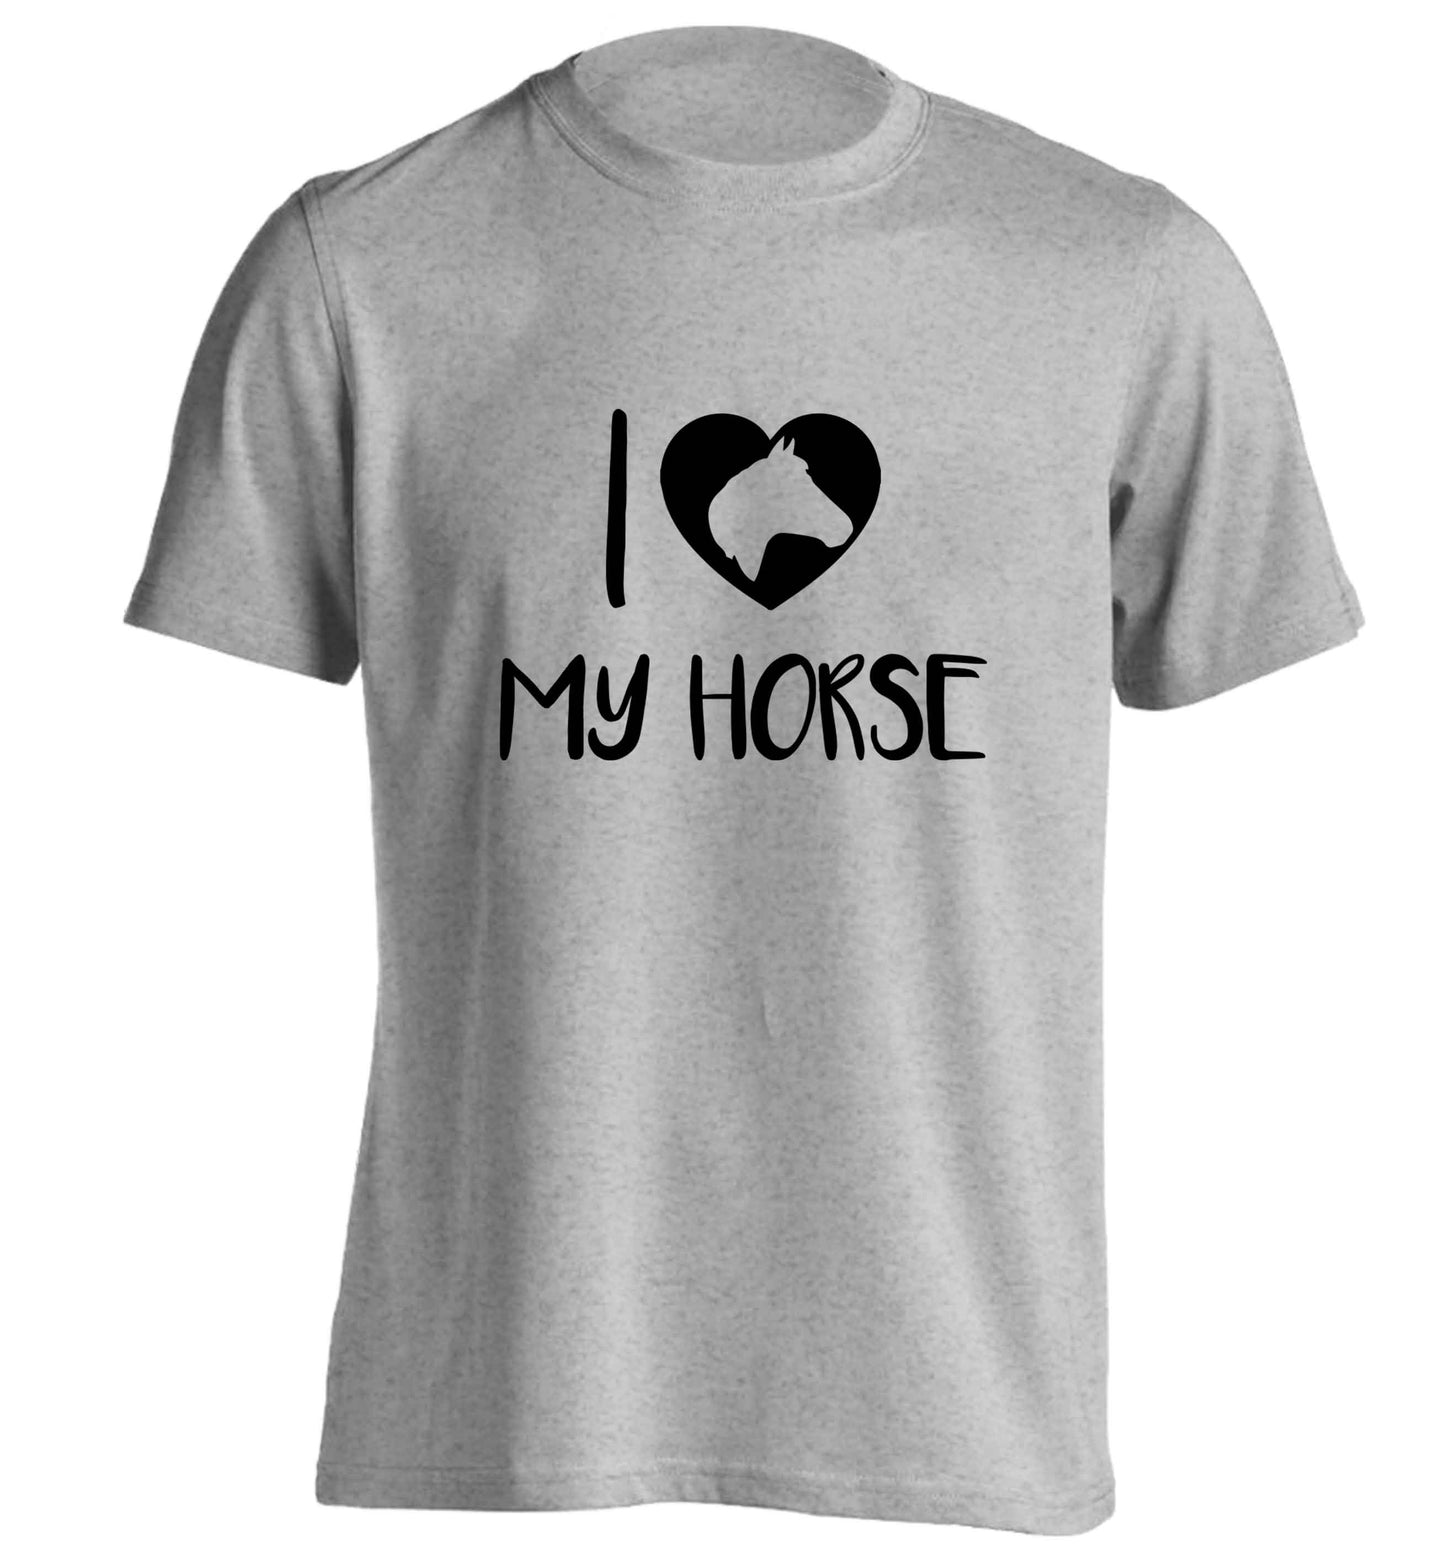 I love my horse adults unisex grey Tshirt 2XL